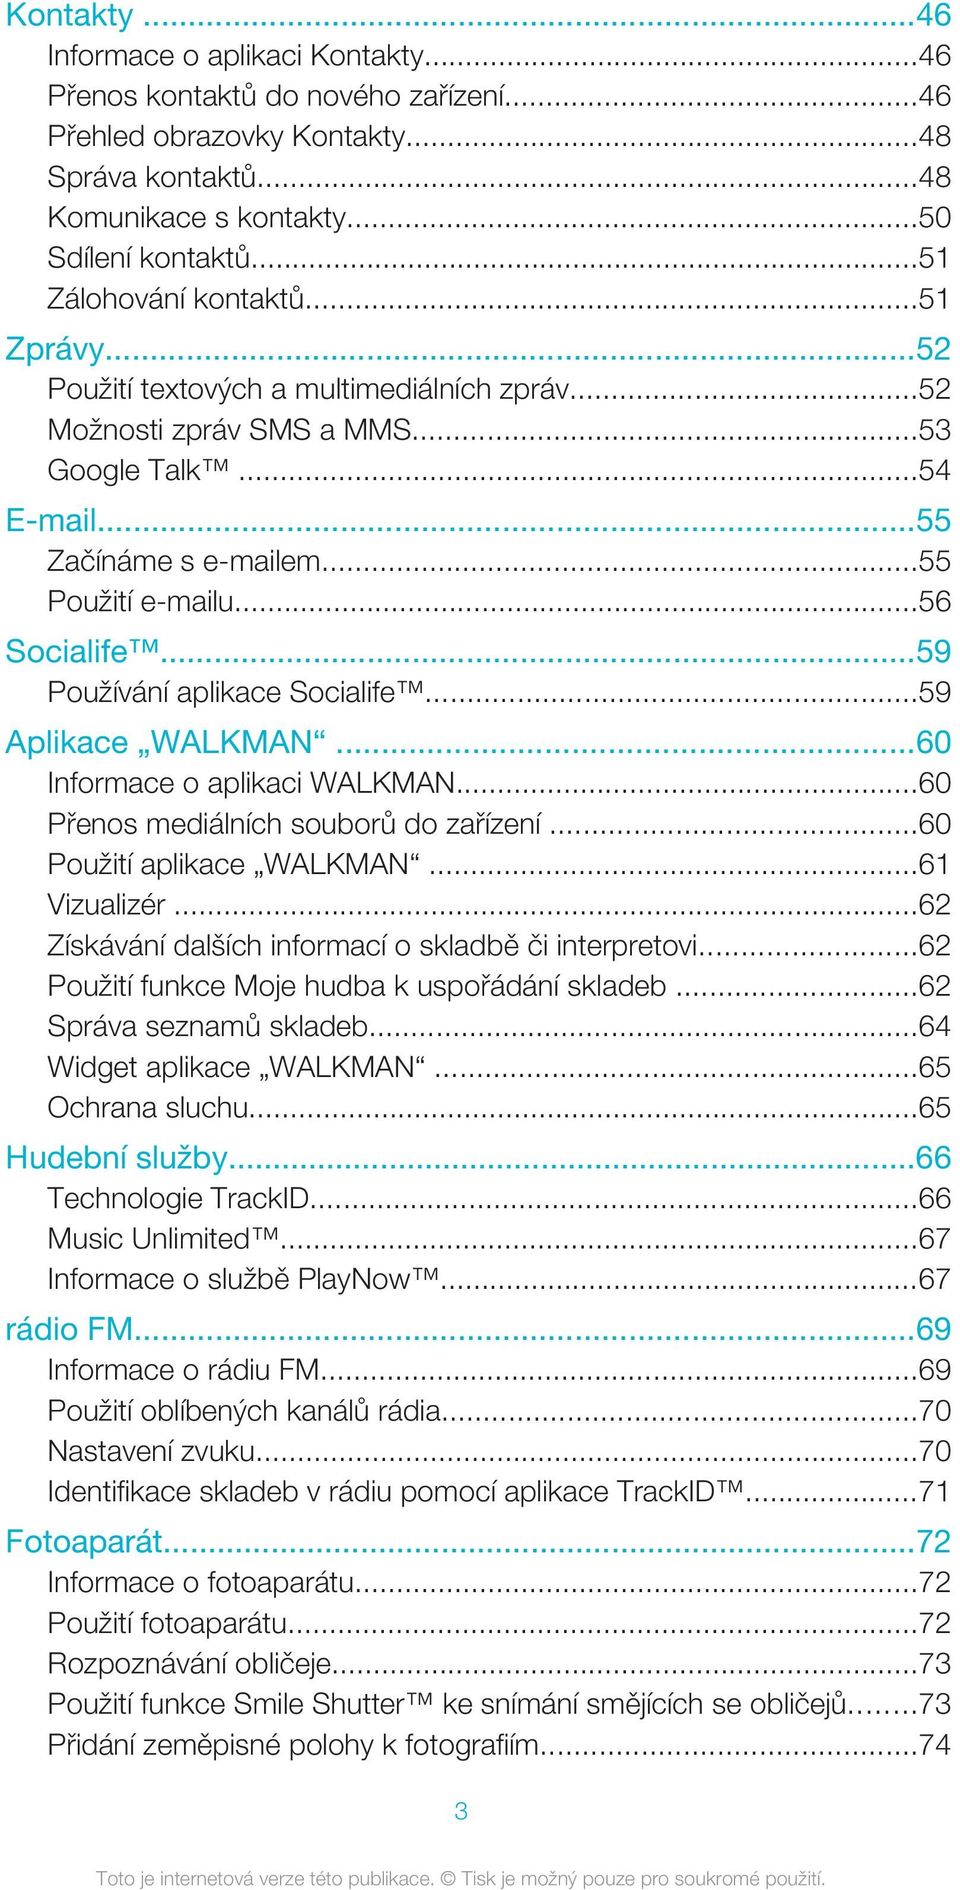 ..56 Socialife...59 Používání aplikace Socialife...59 Aplikace WALKMAN...60 Informace o aplikaci WALKMAN...60 Přenos mediálních souborů do zařízení...60 Použití aplikace WALKMAN...61 Vizualizér.